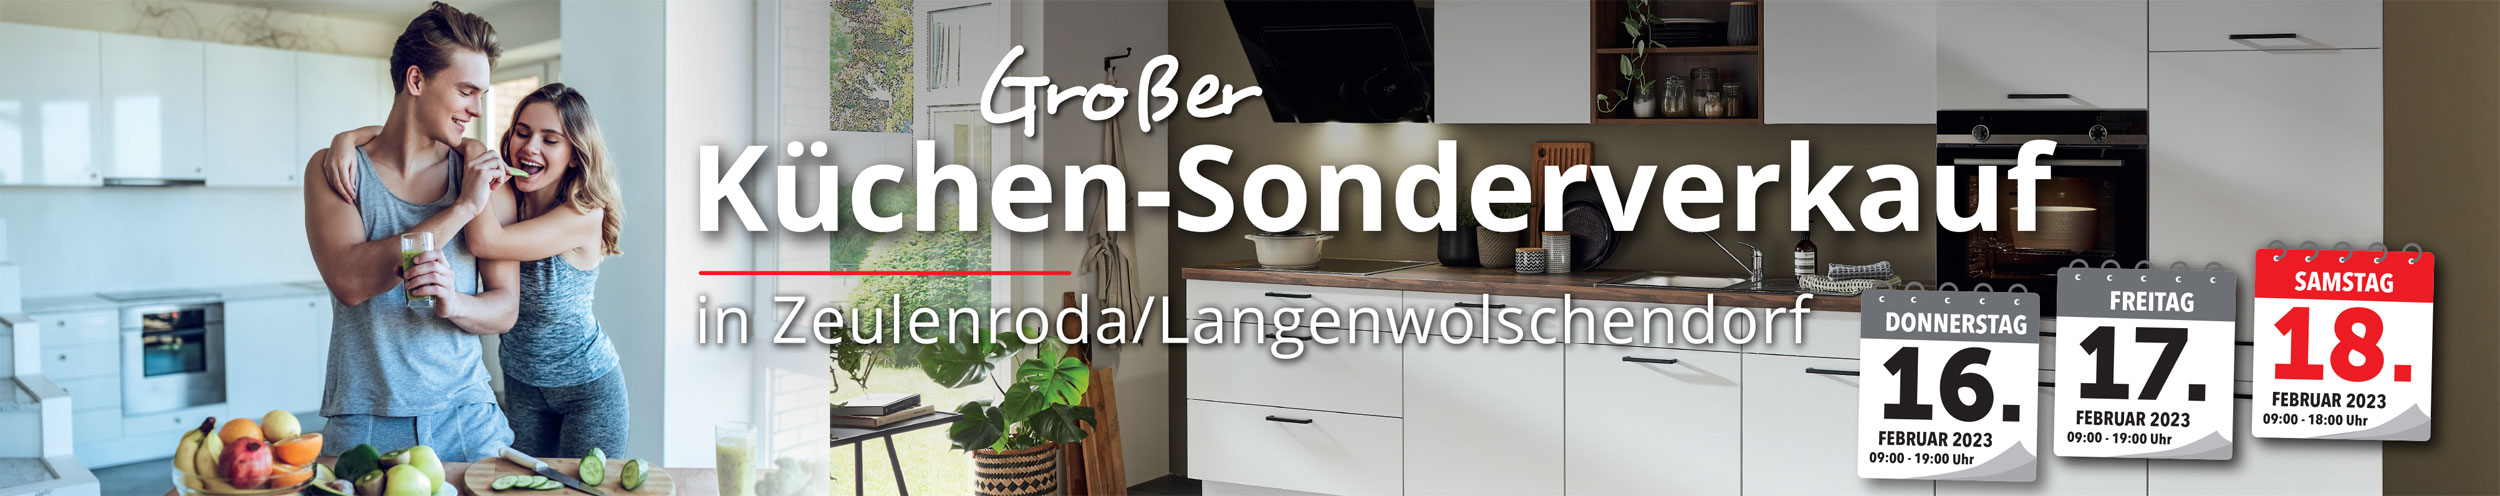 Großer Küchen-Sonderverkauf in Zeulenroda/Langenwolschendorf